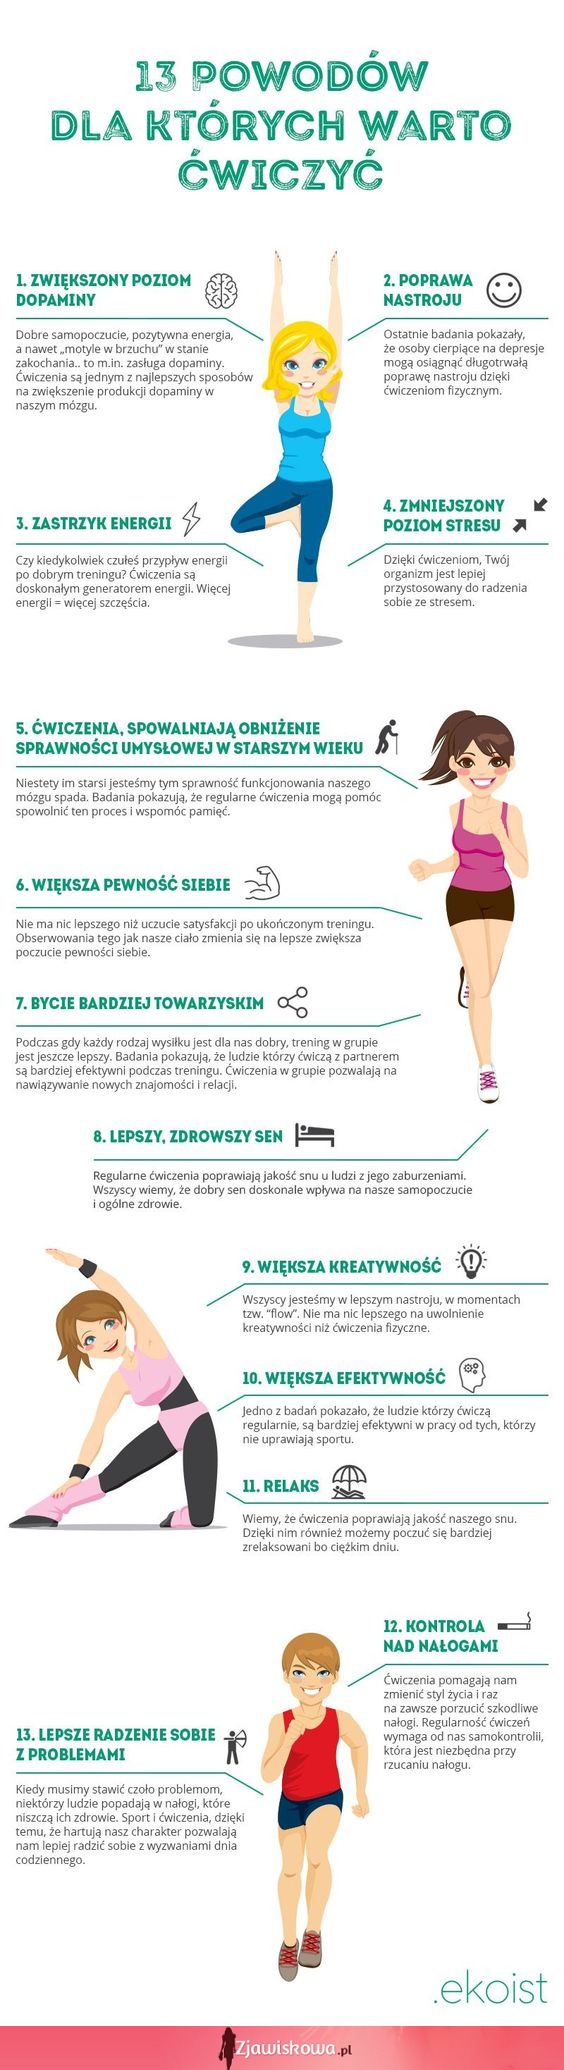 13 powodów, dla których warto ćwiczyć!